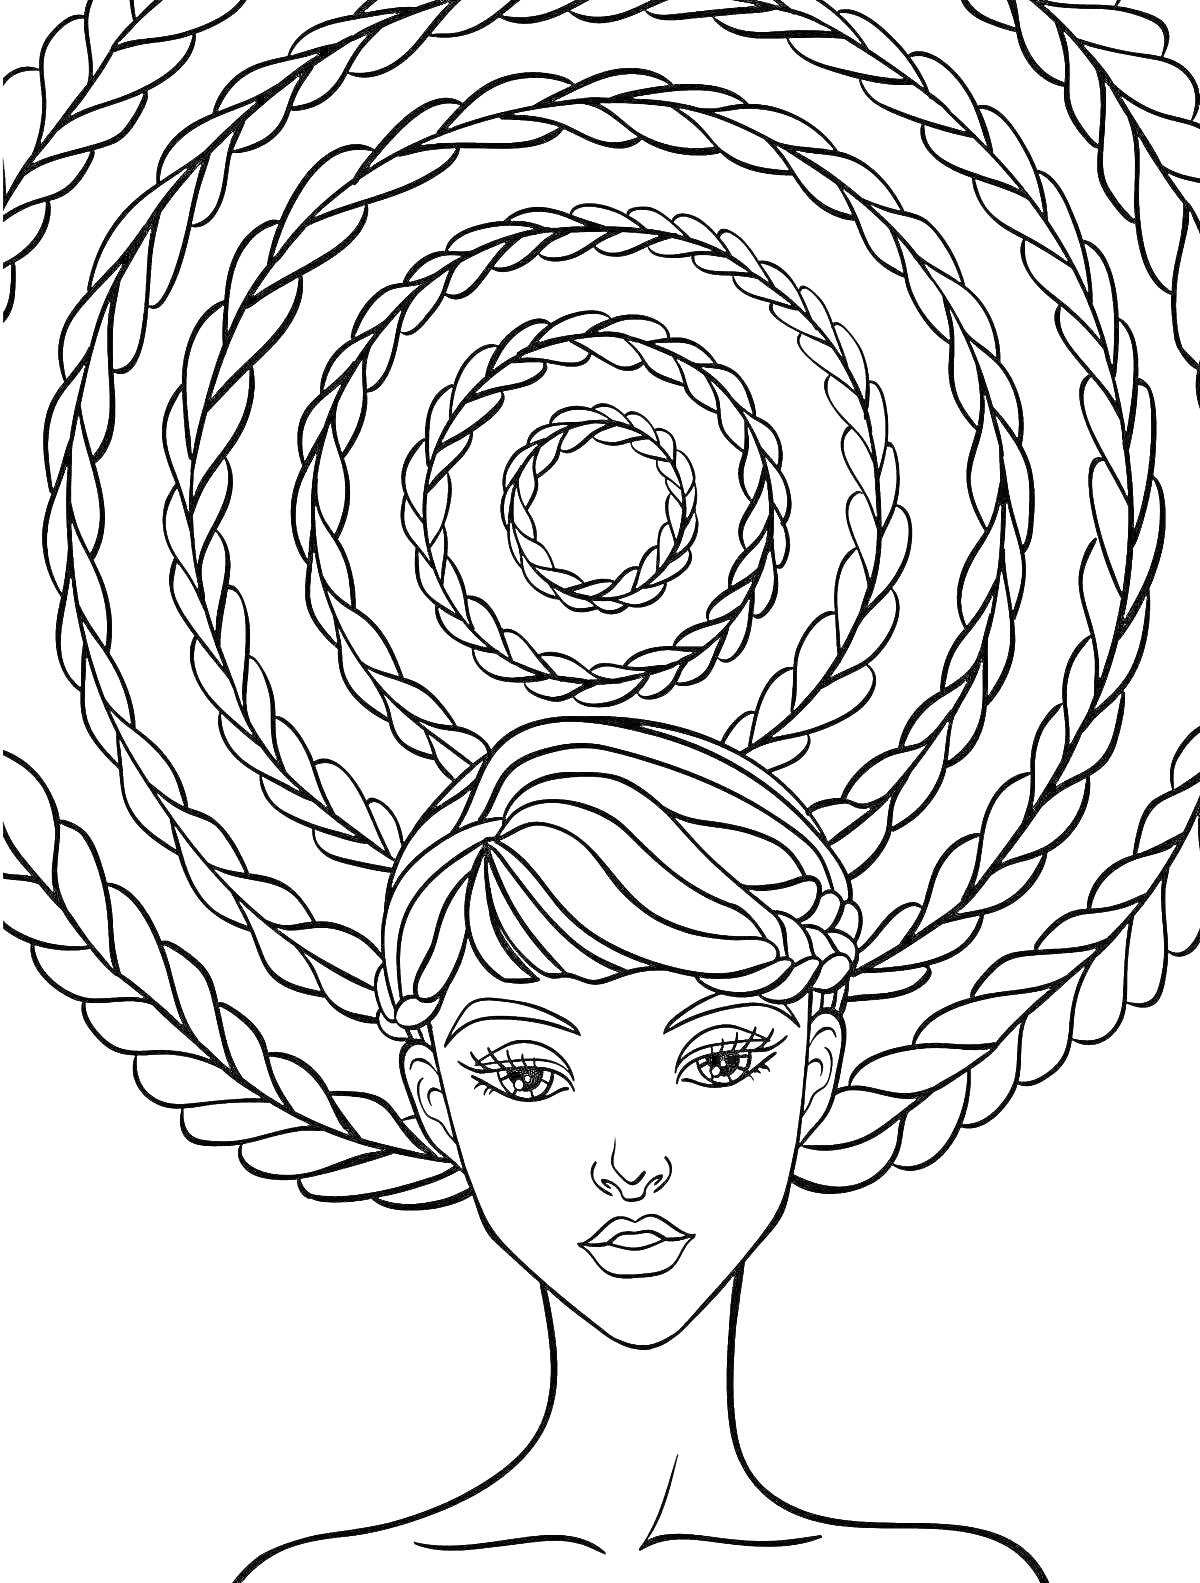 Раскраска Портрет девушки с волосами в виде спиральных кос